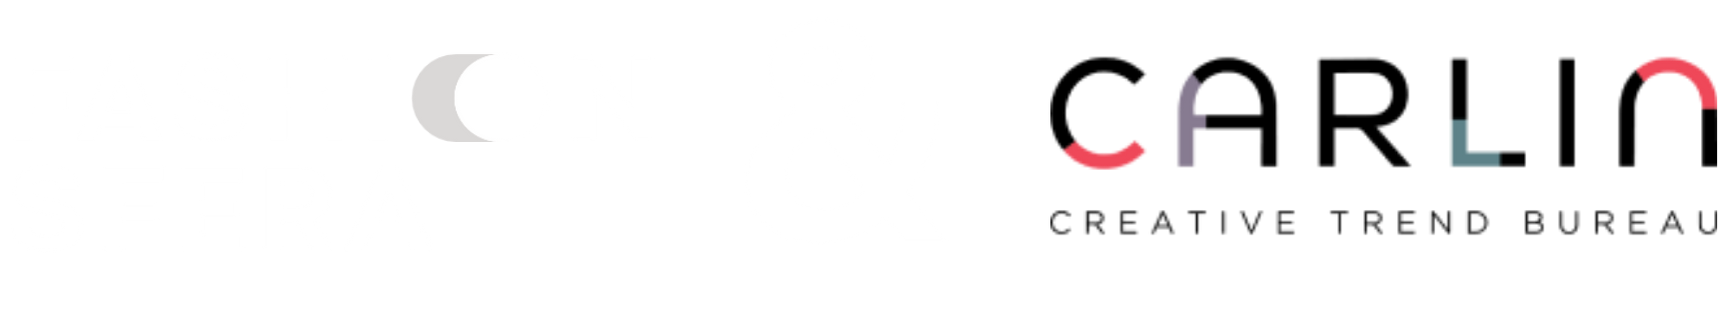 FashionSfera & Carlin Logo